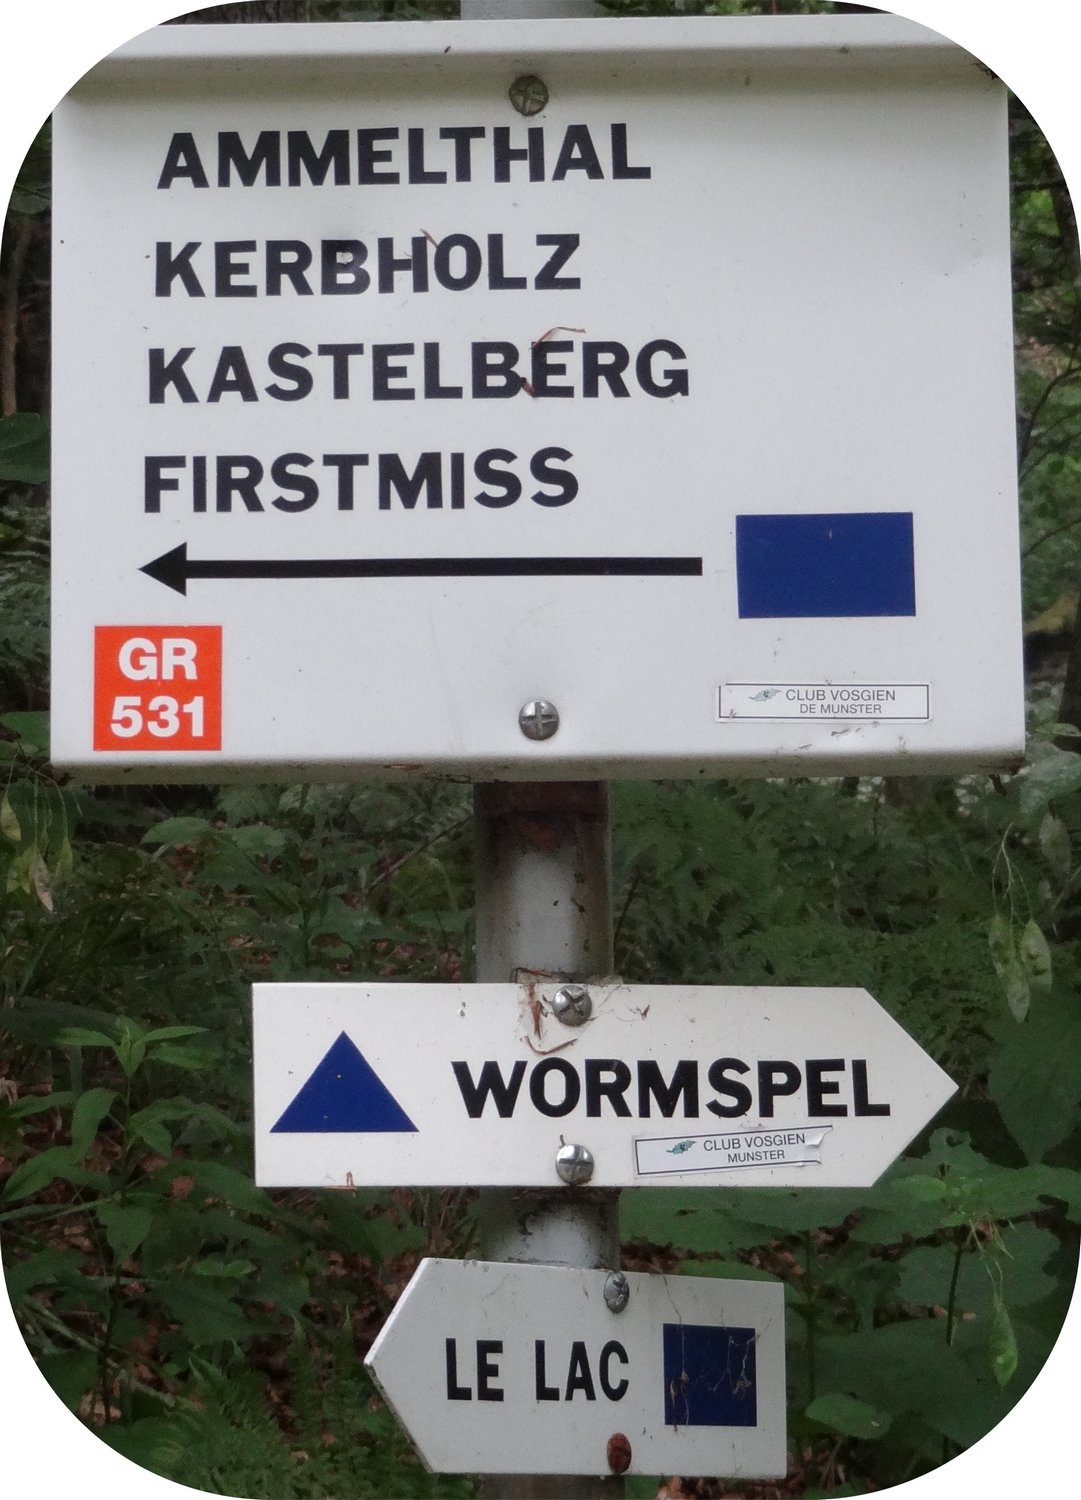 Panneau indiquant les directions à suivre pour se rendre à l'arête des Spitzkoepfe dans les Vosges